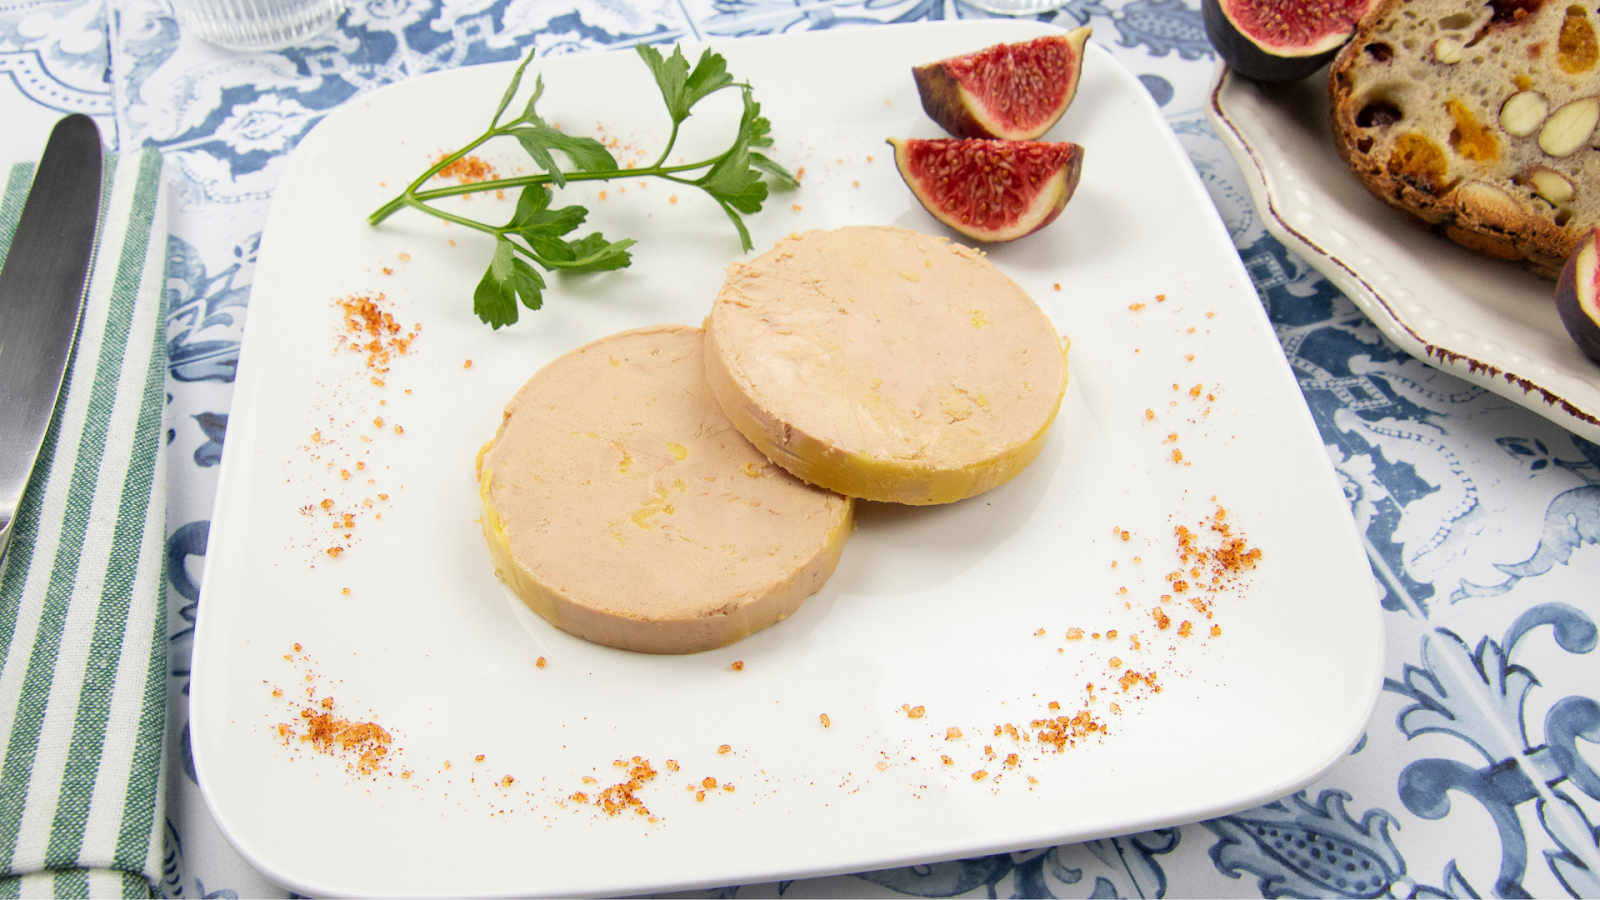 La quête du foie gras cru chez Lidl France